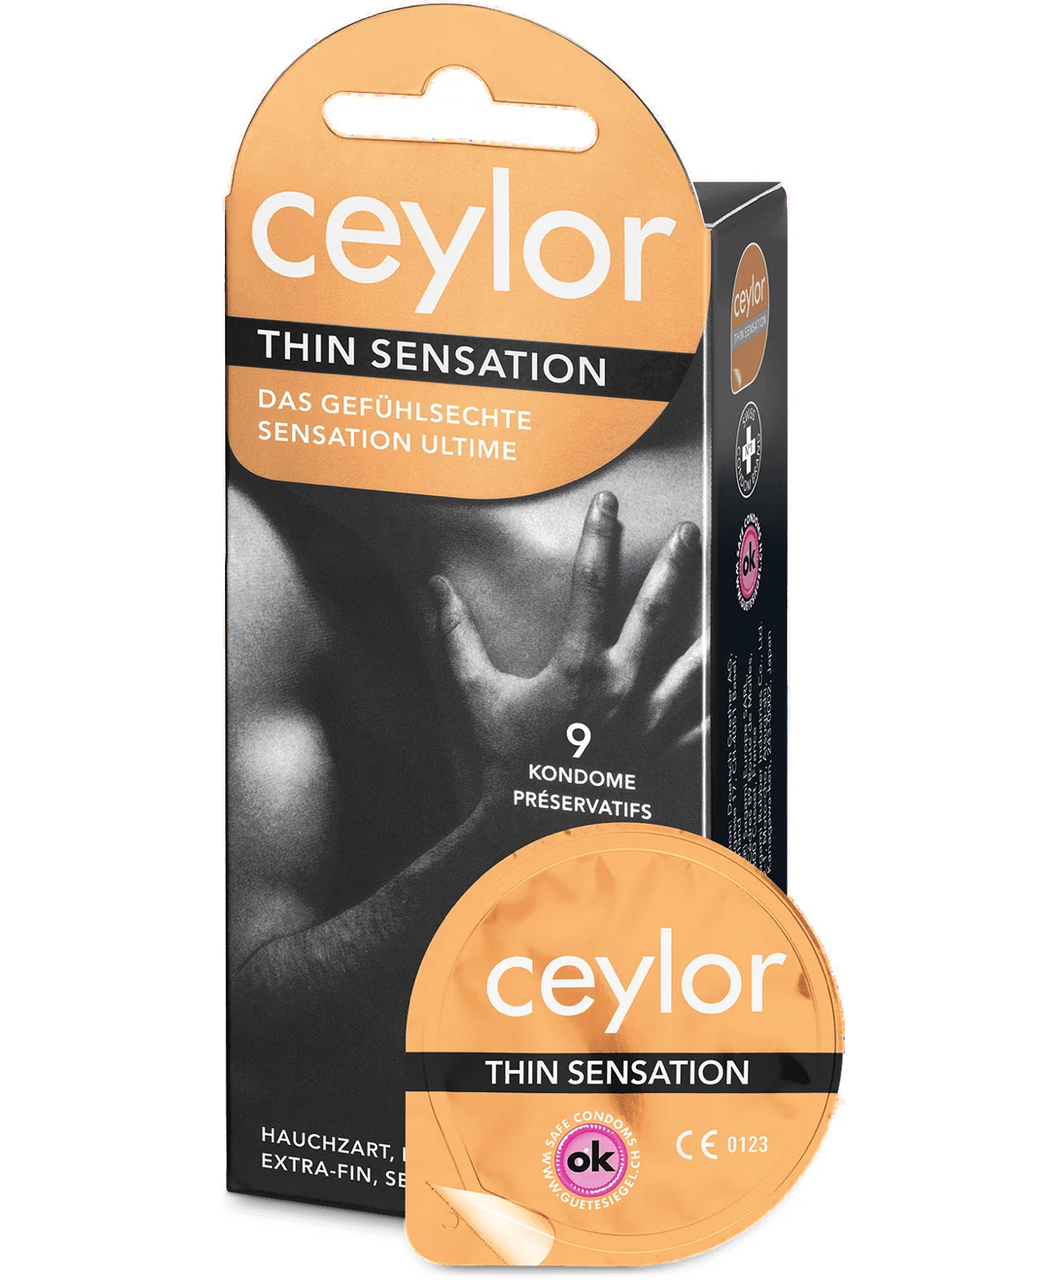 Ceylor Thin Sensation prezervatīvi (6 / 9 gab.)